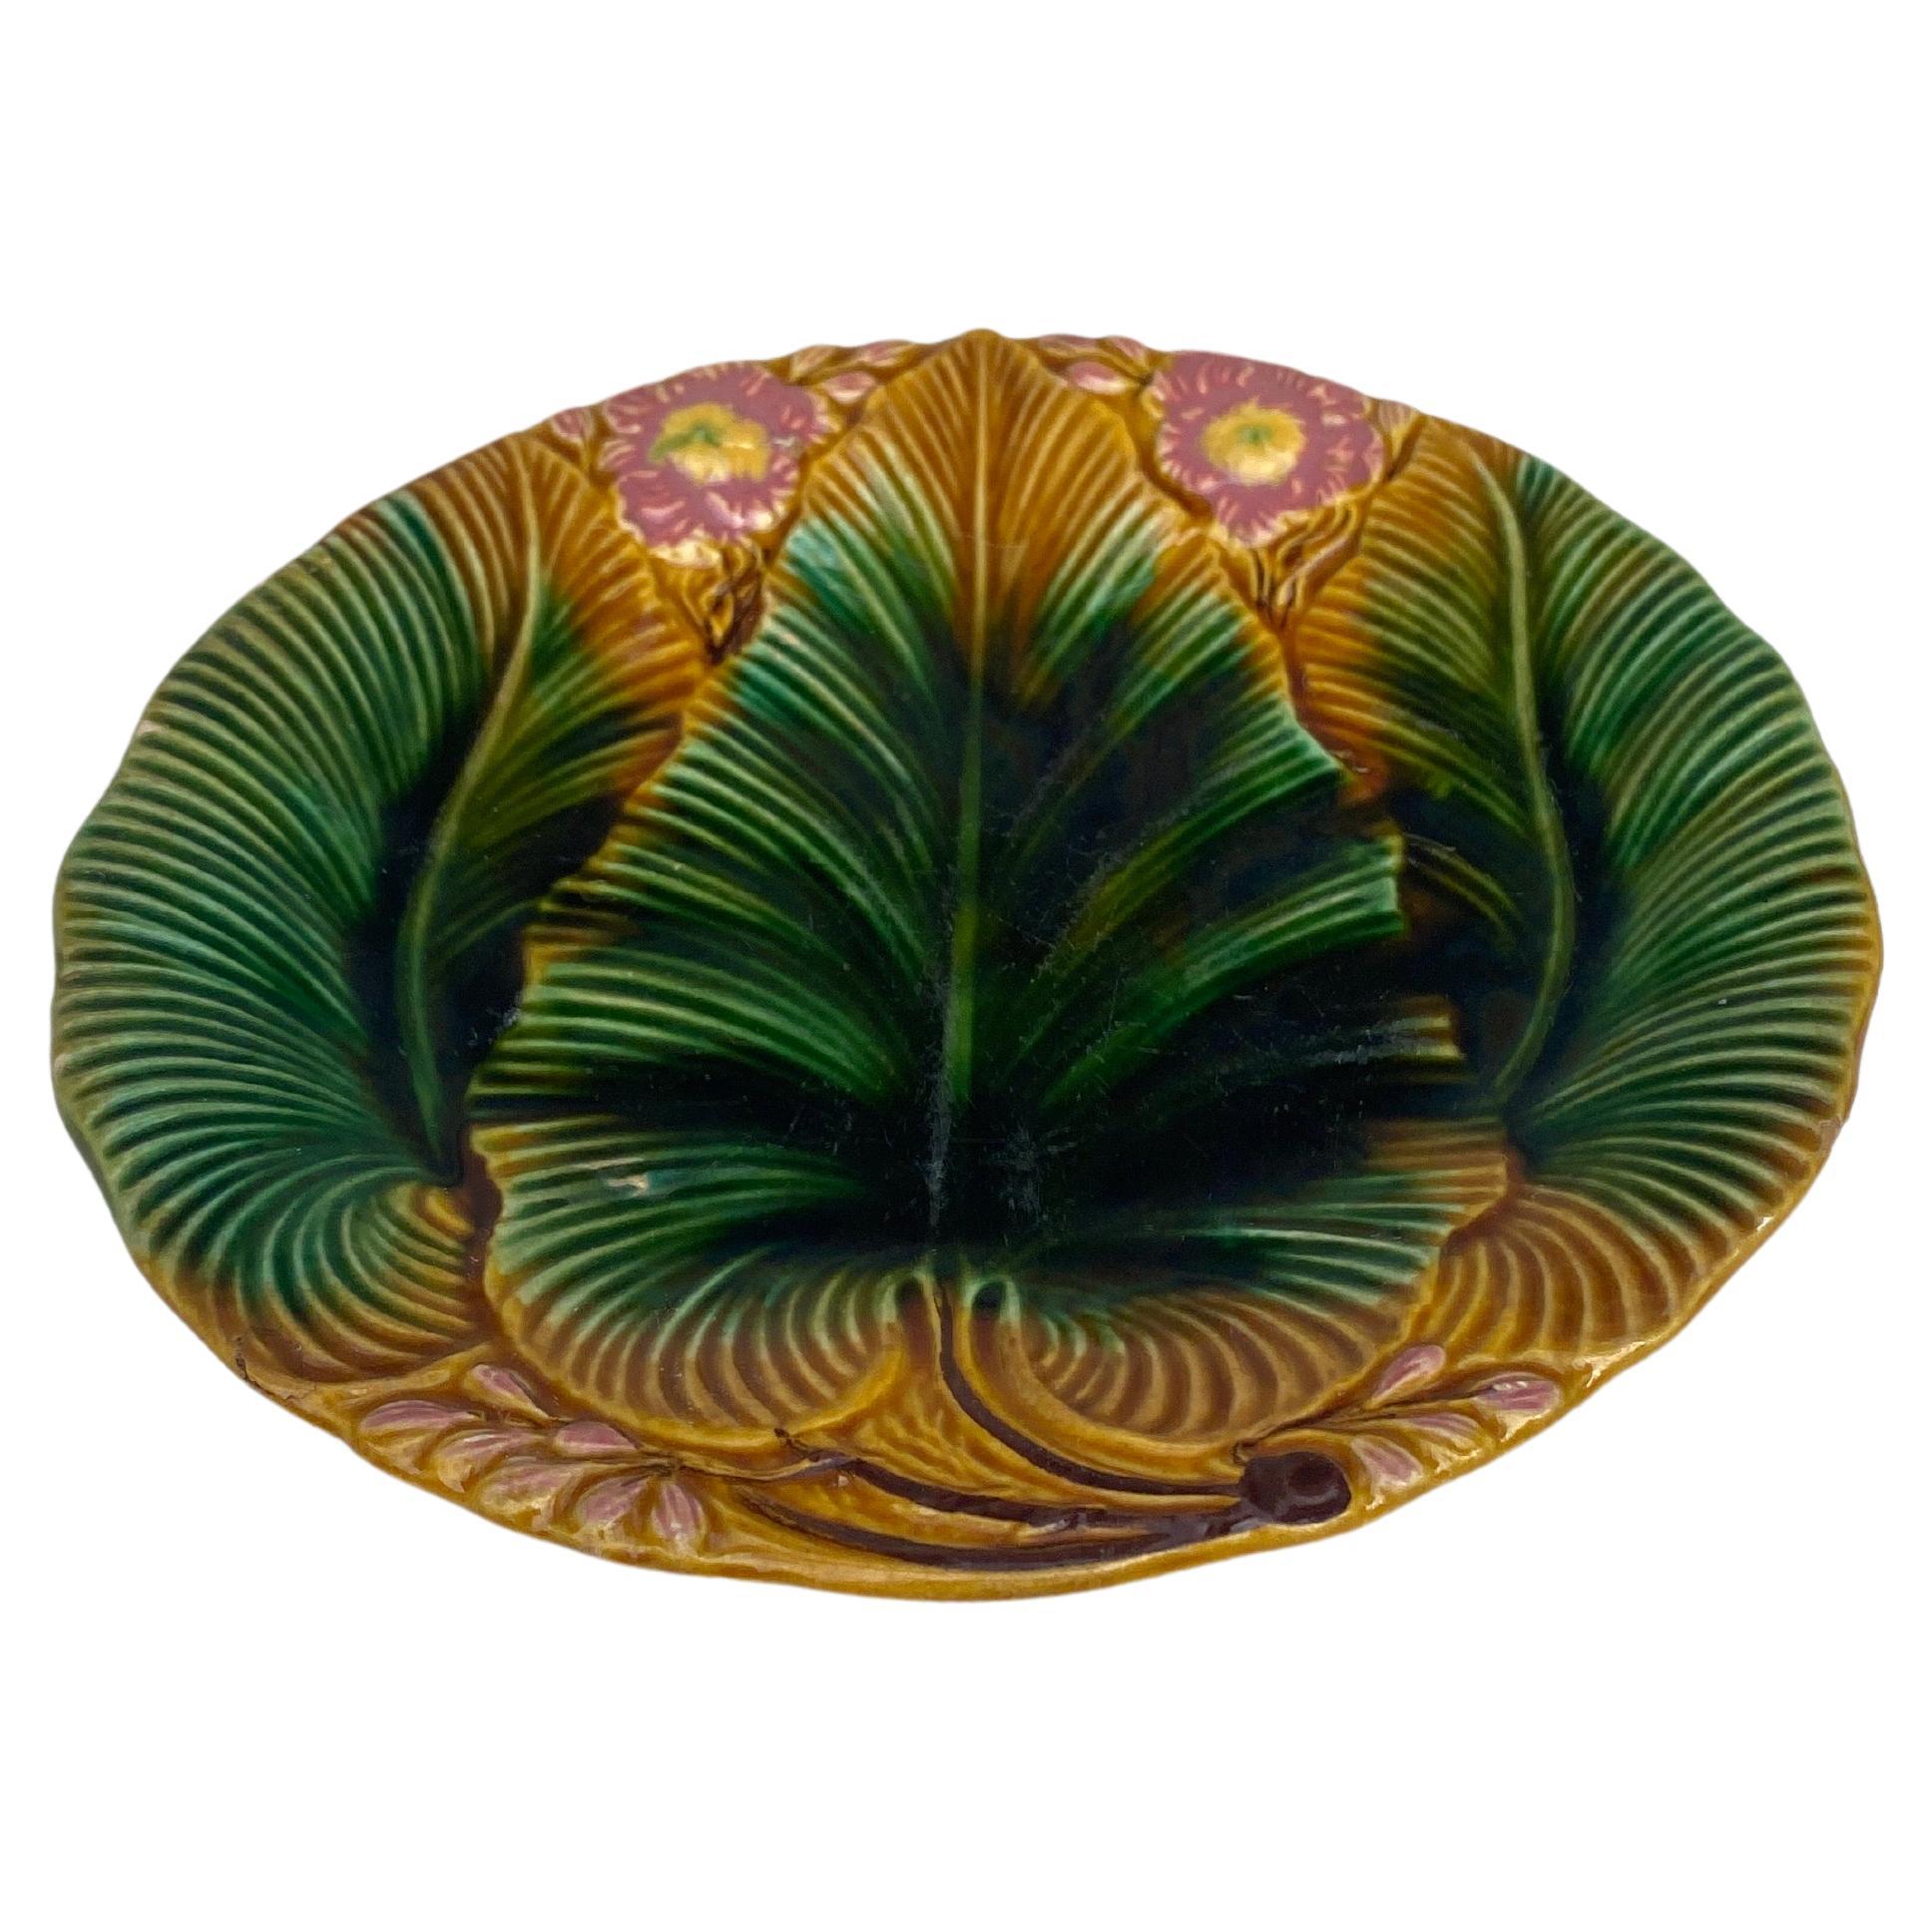 Assiette en majolique à feuilles de palmier signée Villeroy & Boch, vers 1890.